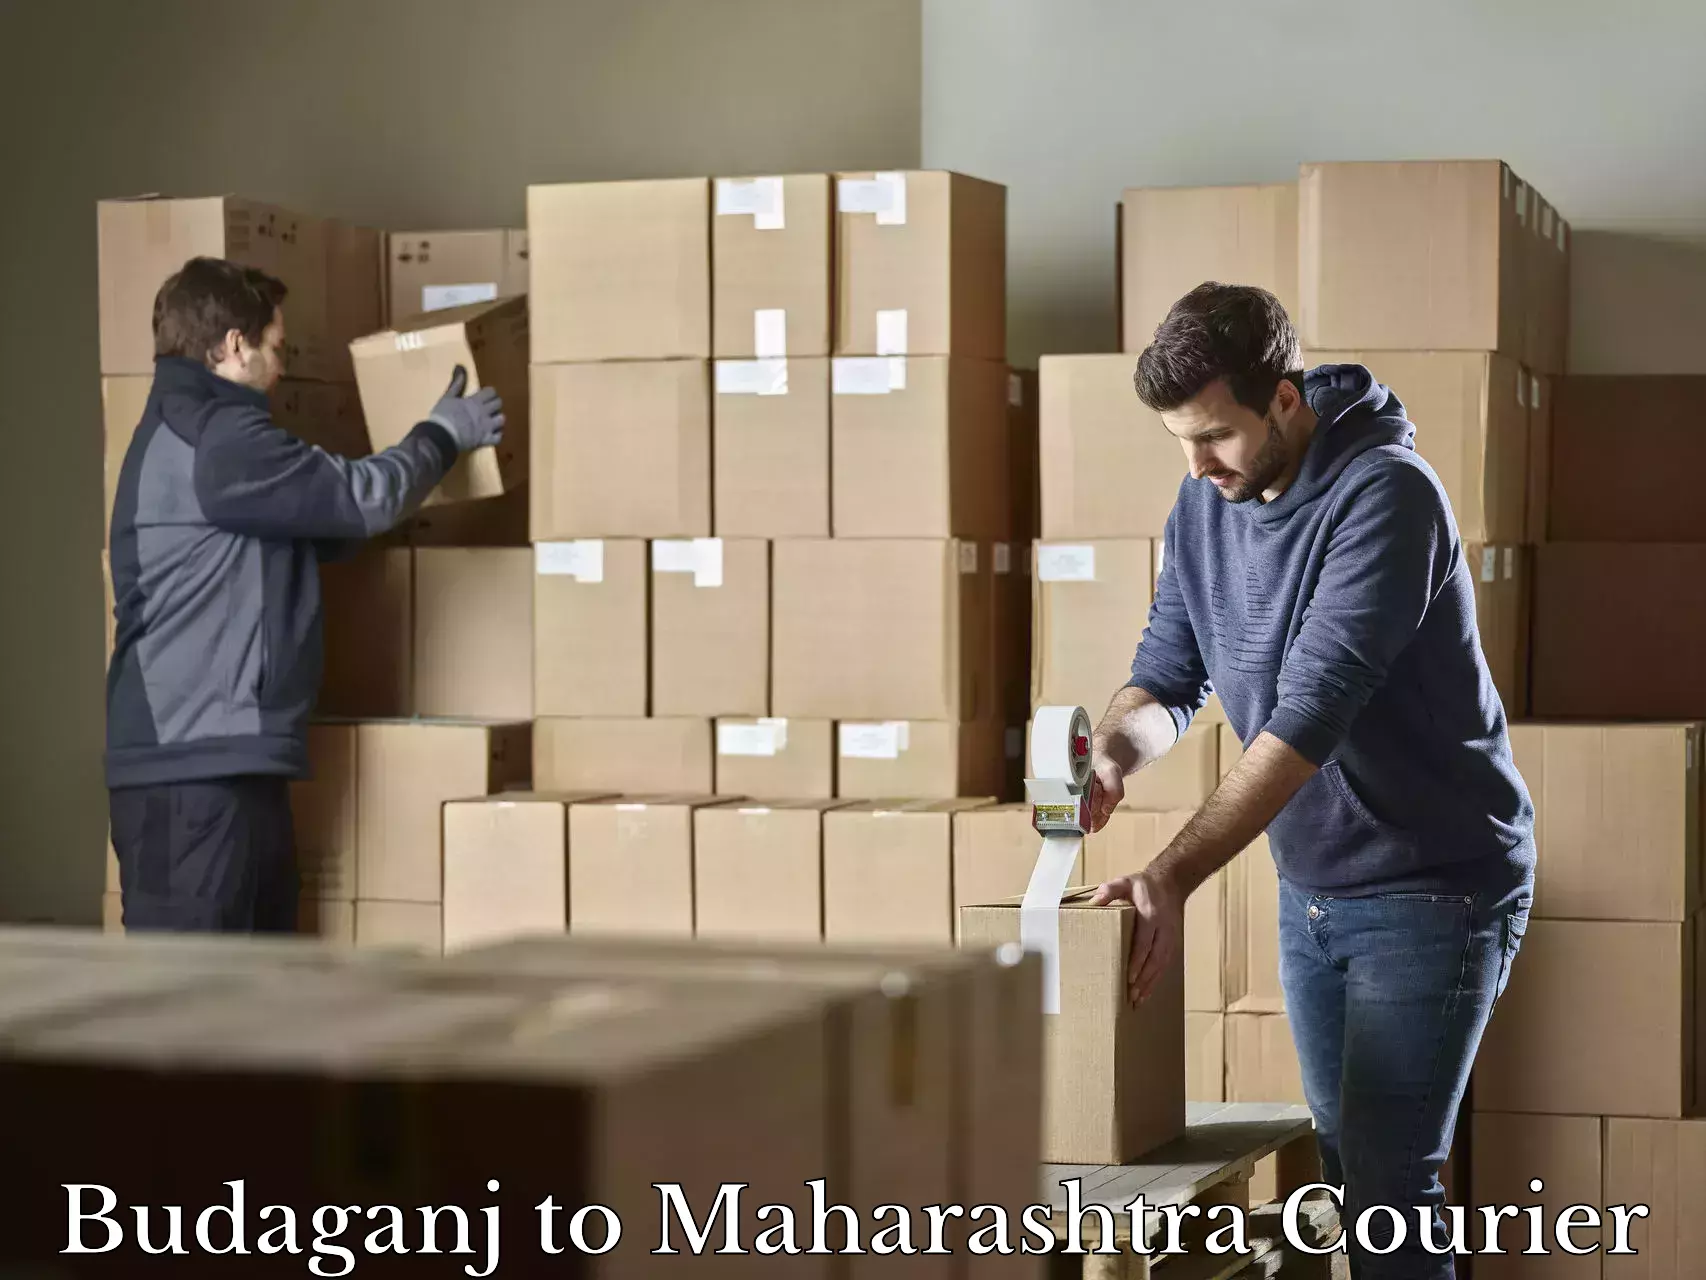 Baggage transport network Budaganj to Maharashtra